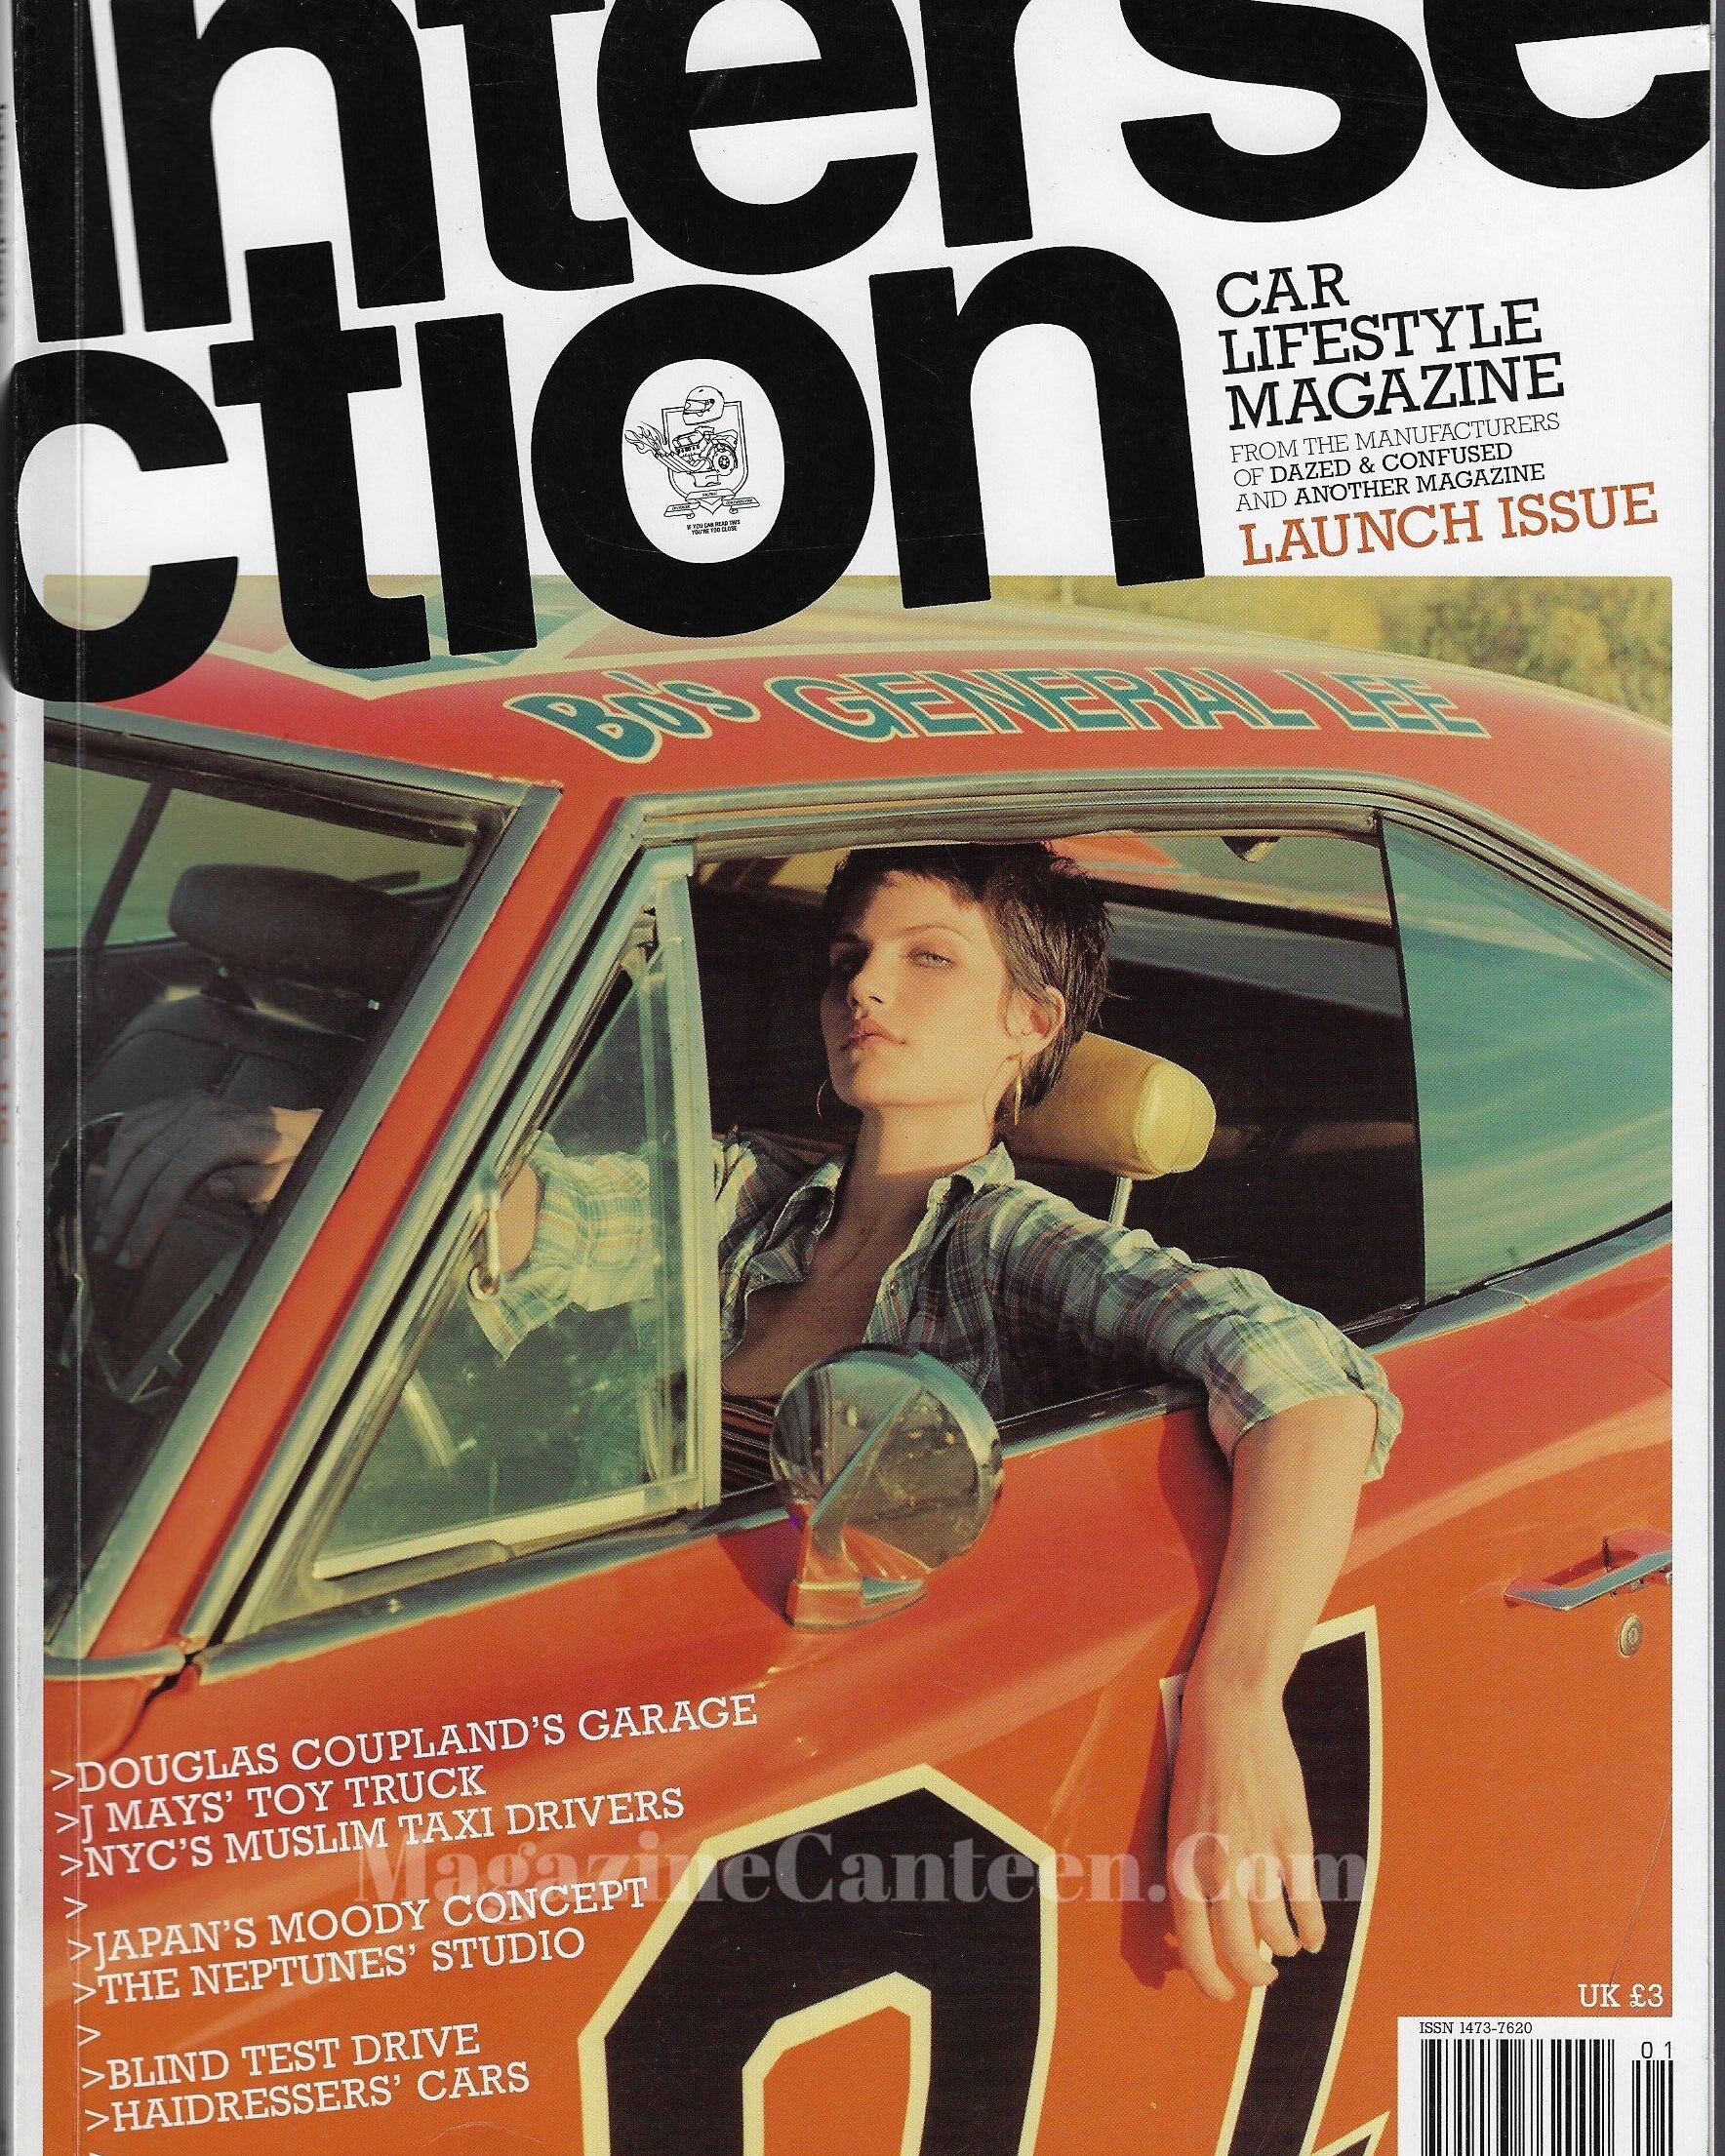 Intersection Magazine - Missy Rayder Jamie Hewlett The Gorillaz